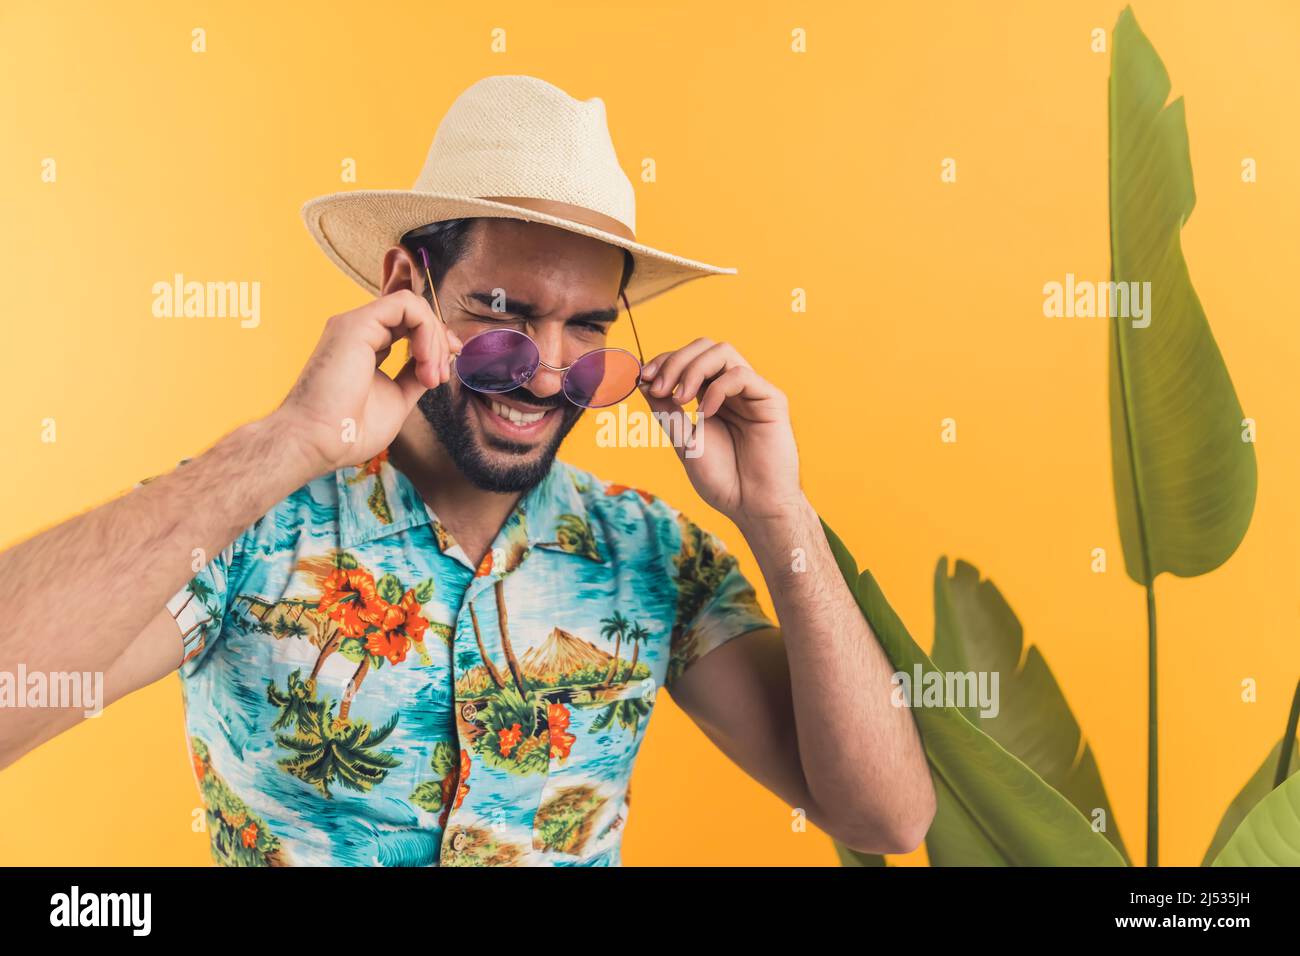 Schöner Latino-amerikanischer junger Mann in Sommerkleidung und mit Sonnenbrille, die auf orangefarbenem Hintergrund zwinkend ist, mit einem mittelgroßen Nahaufnahme-Studio, das im Sommer aufgenommen wurde. Hochwertige Fotos Stockfoto